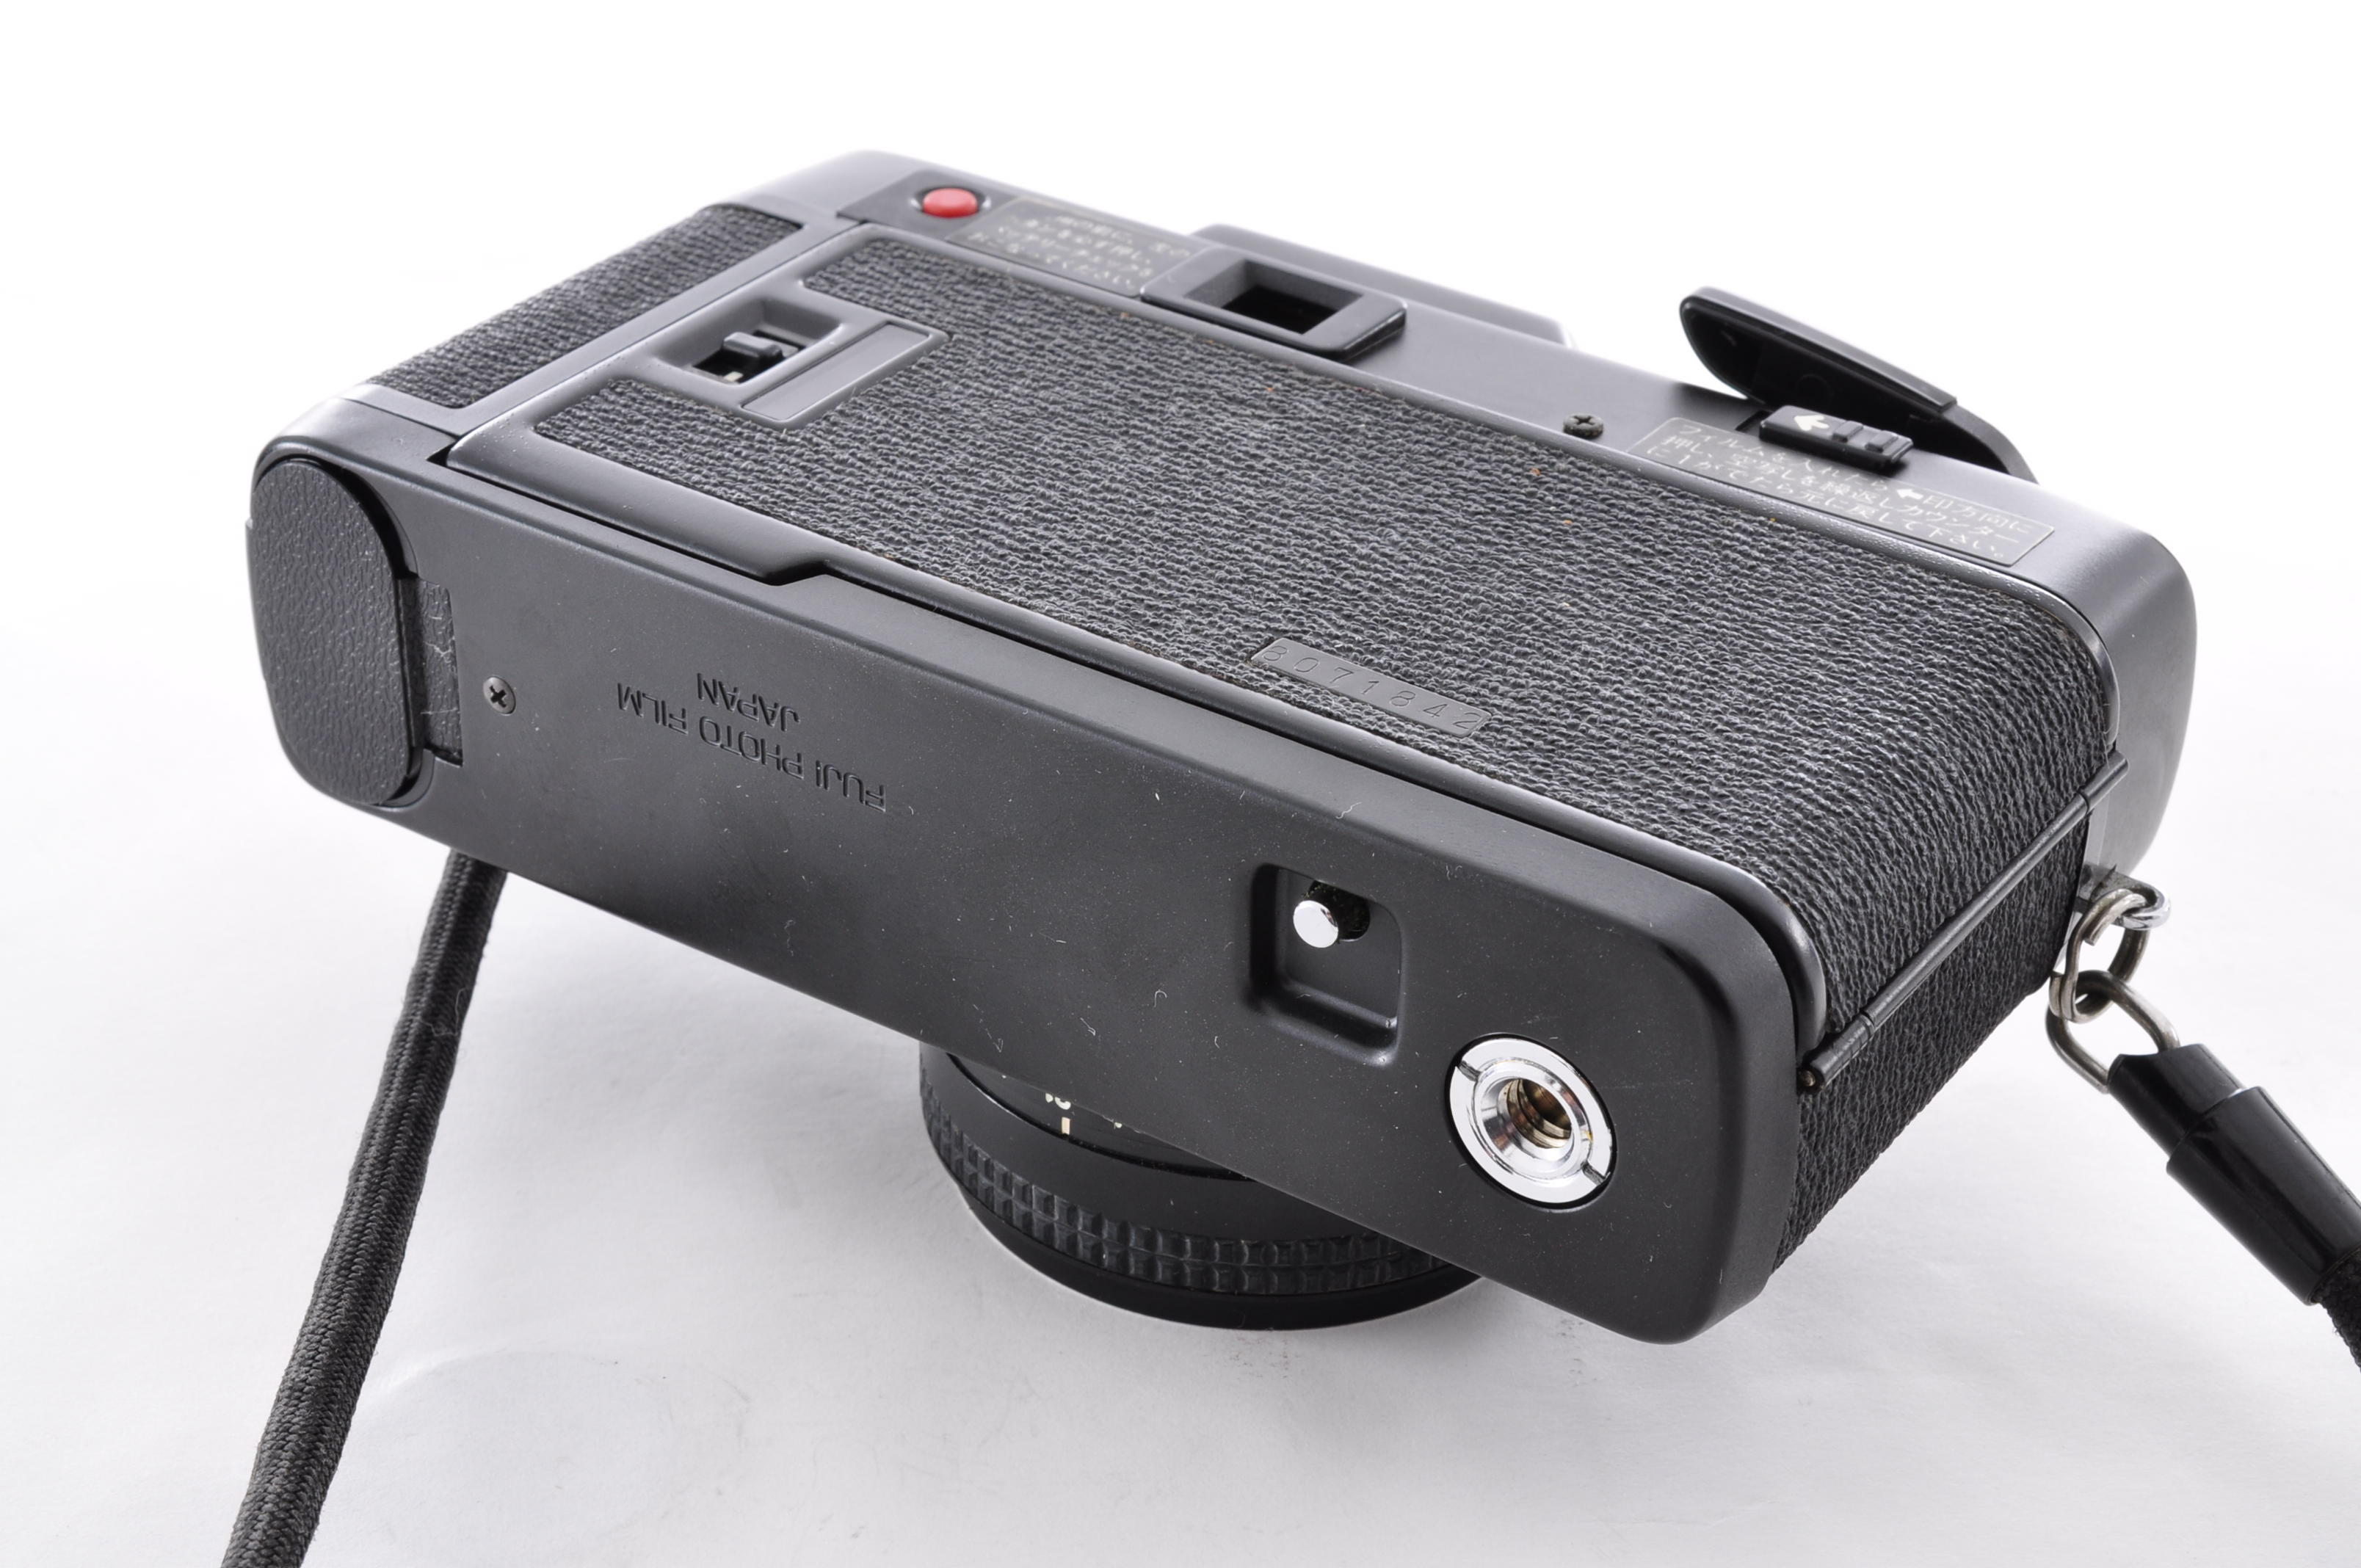 Fuji Fujifilm Flash Fujica Date Rangefinder 35mm Film Camera [Near MINT] JAPAN img05